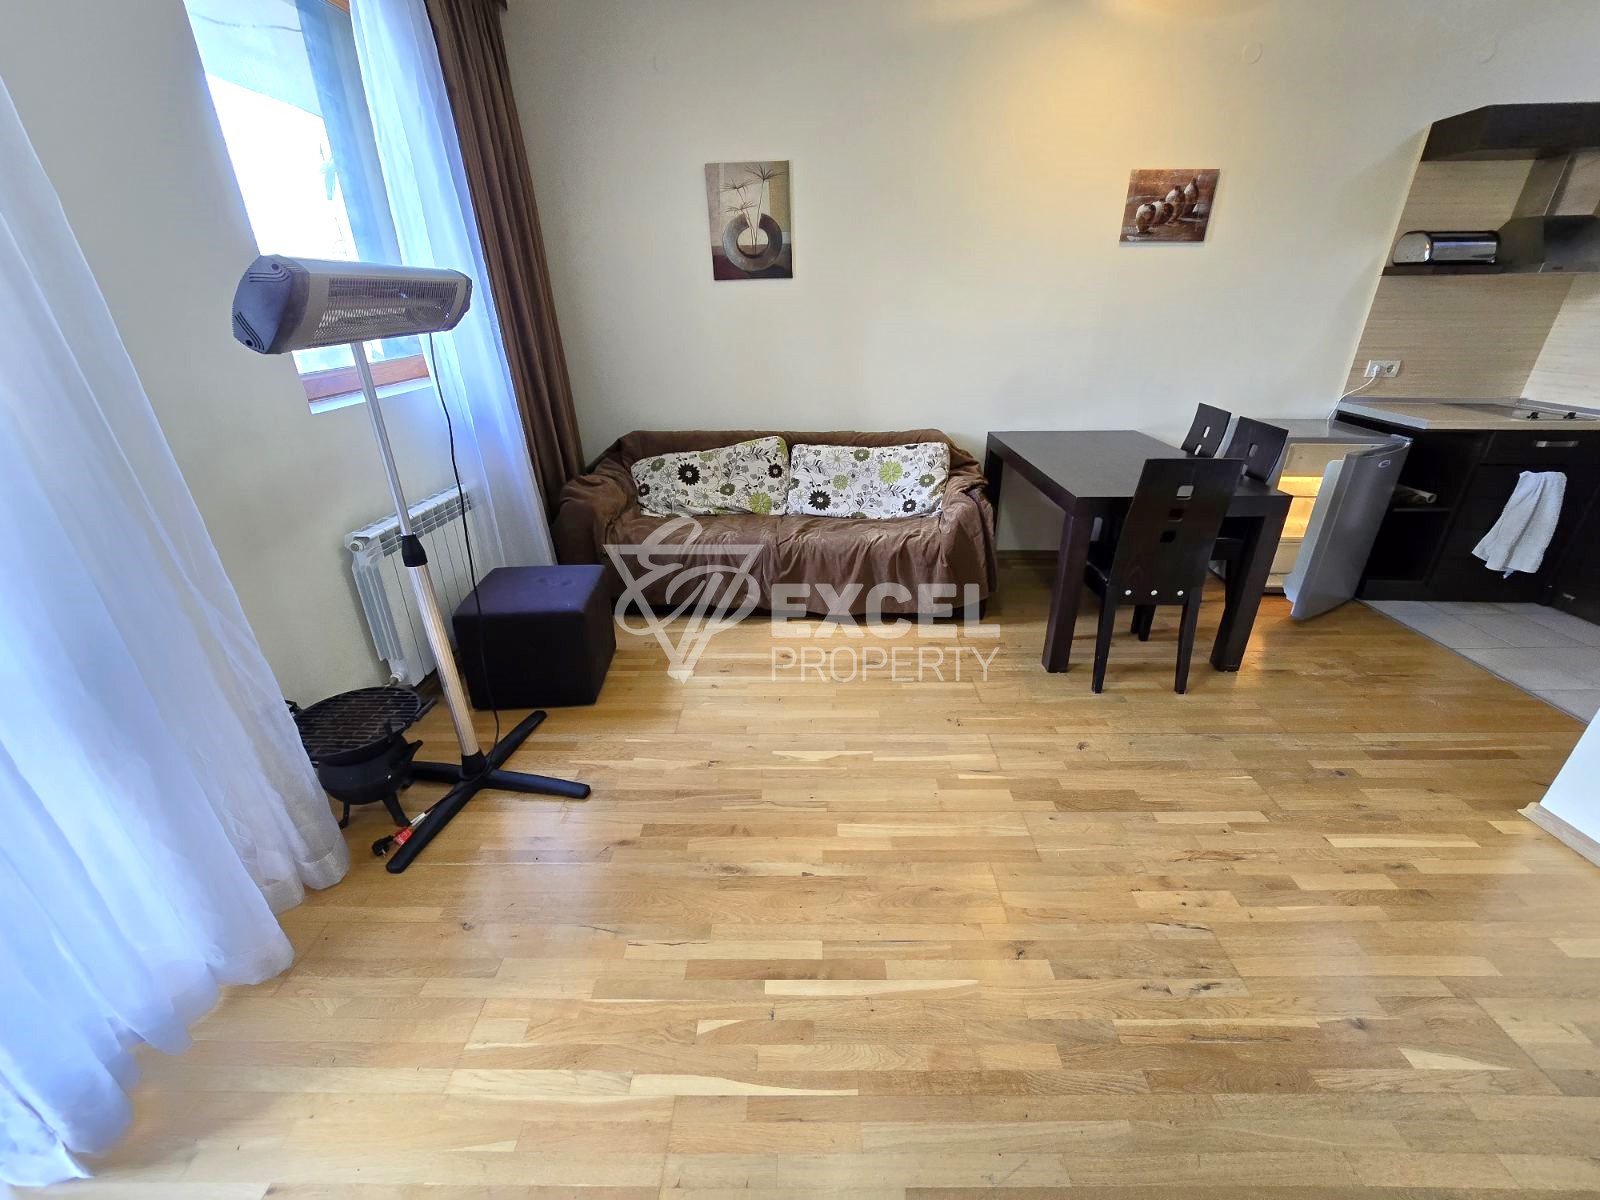 Продажа двухкомнатной квартиры на первом этаже в комплексе All Seasons Club, Банско